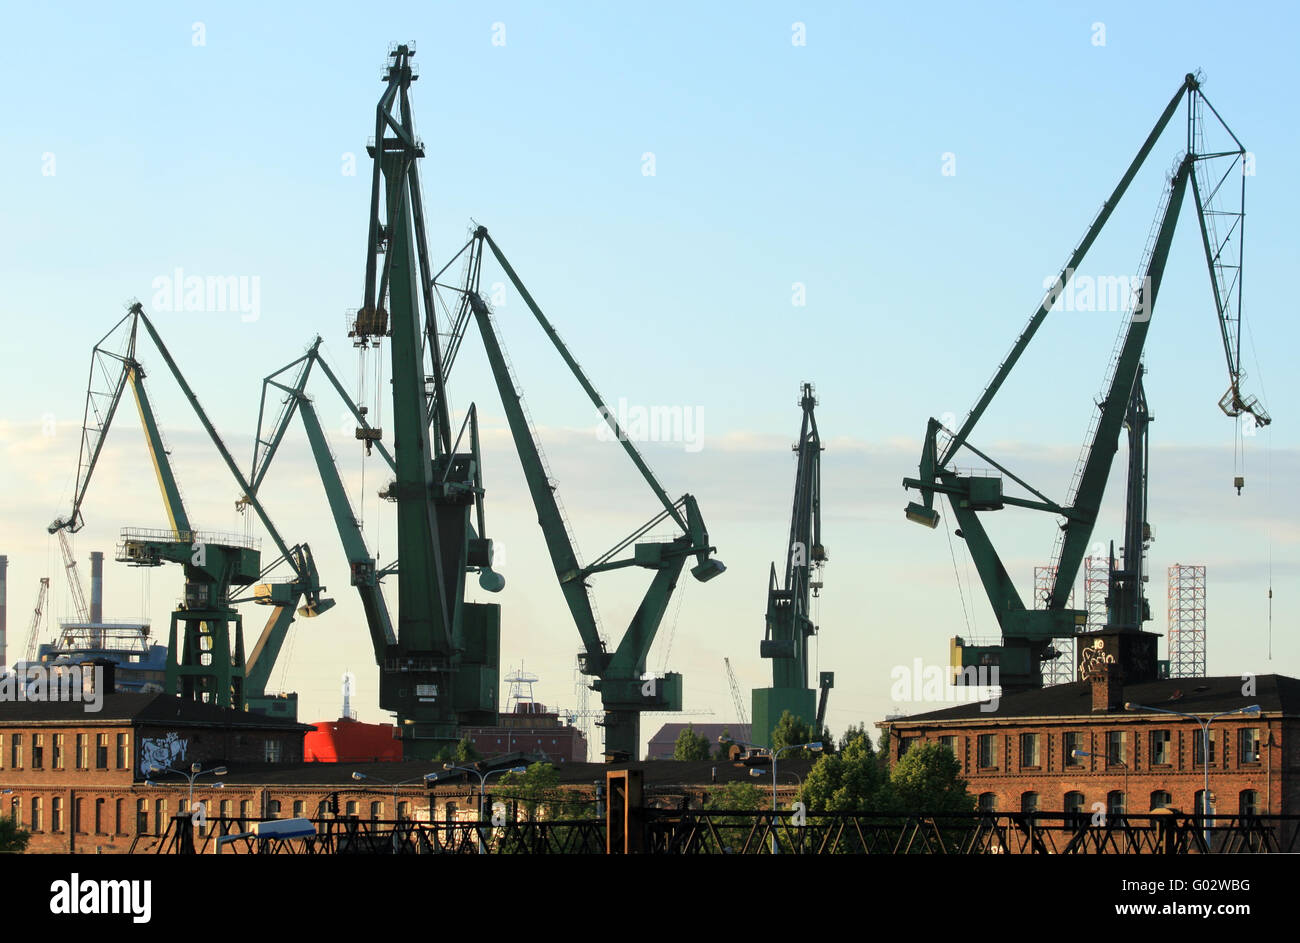 Silhouettes de grues portuaires et les bâtiments industriels à l'historique chantier naval de Gdansk Banque D'Images